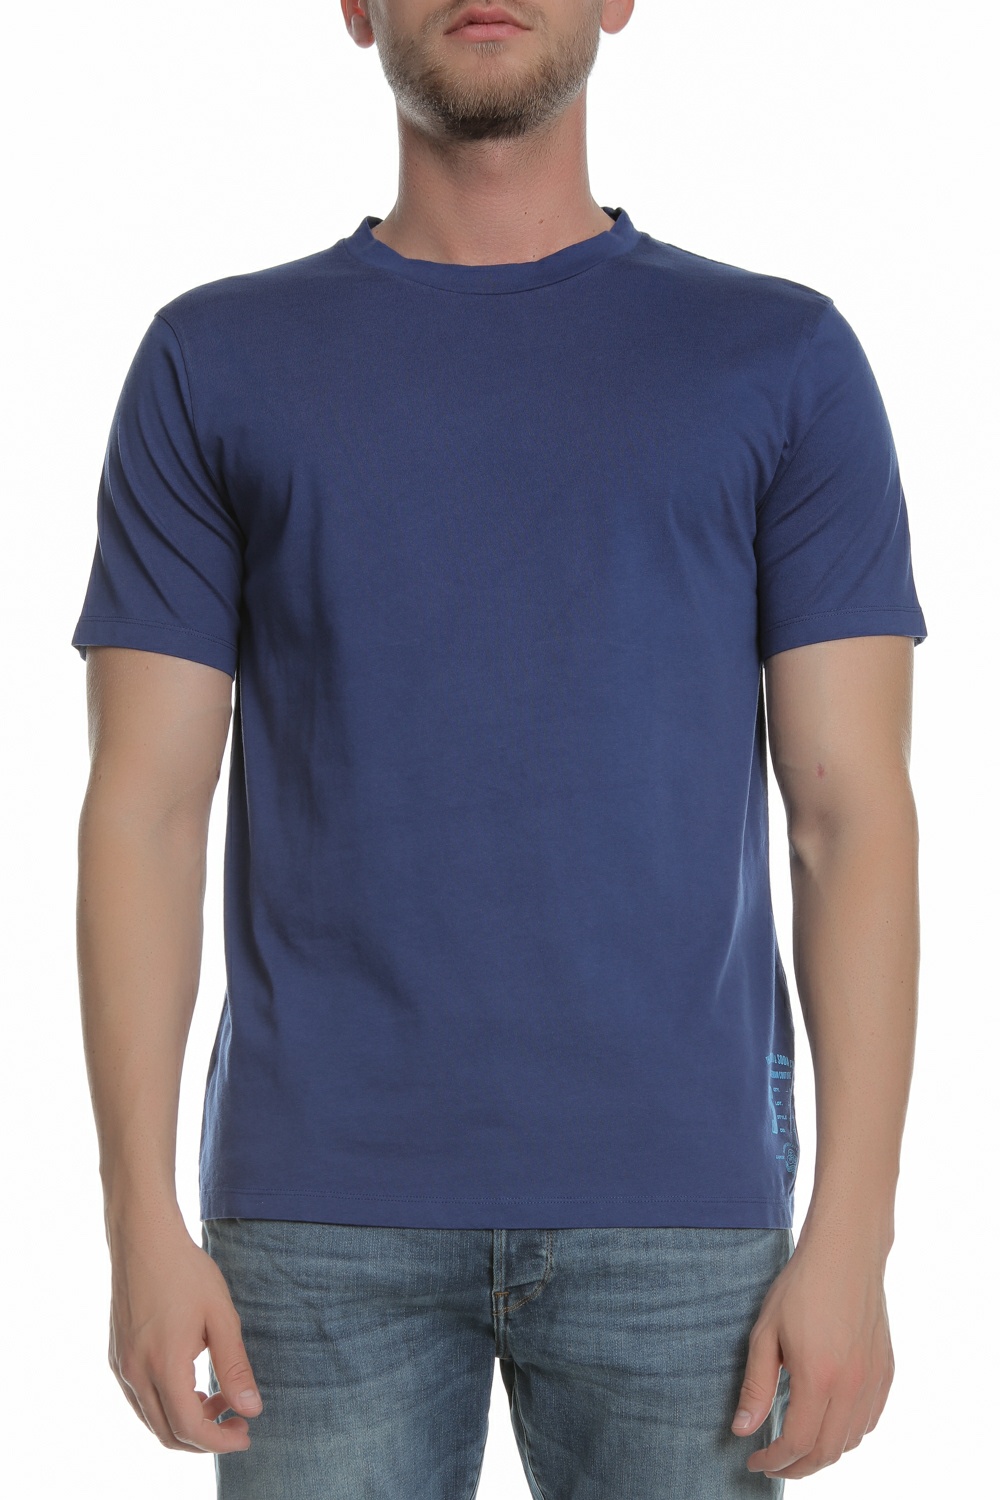 Ανδρικά/Ρούχα/Μπλούζες/Κοντομάνικες SCOTCH & SODA - Ανδρική κοντομάνικη μπλούζα SCOTCH & SODA μπλε